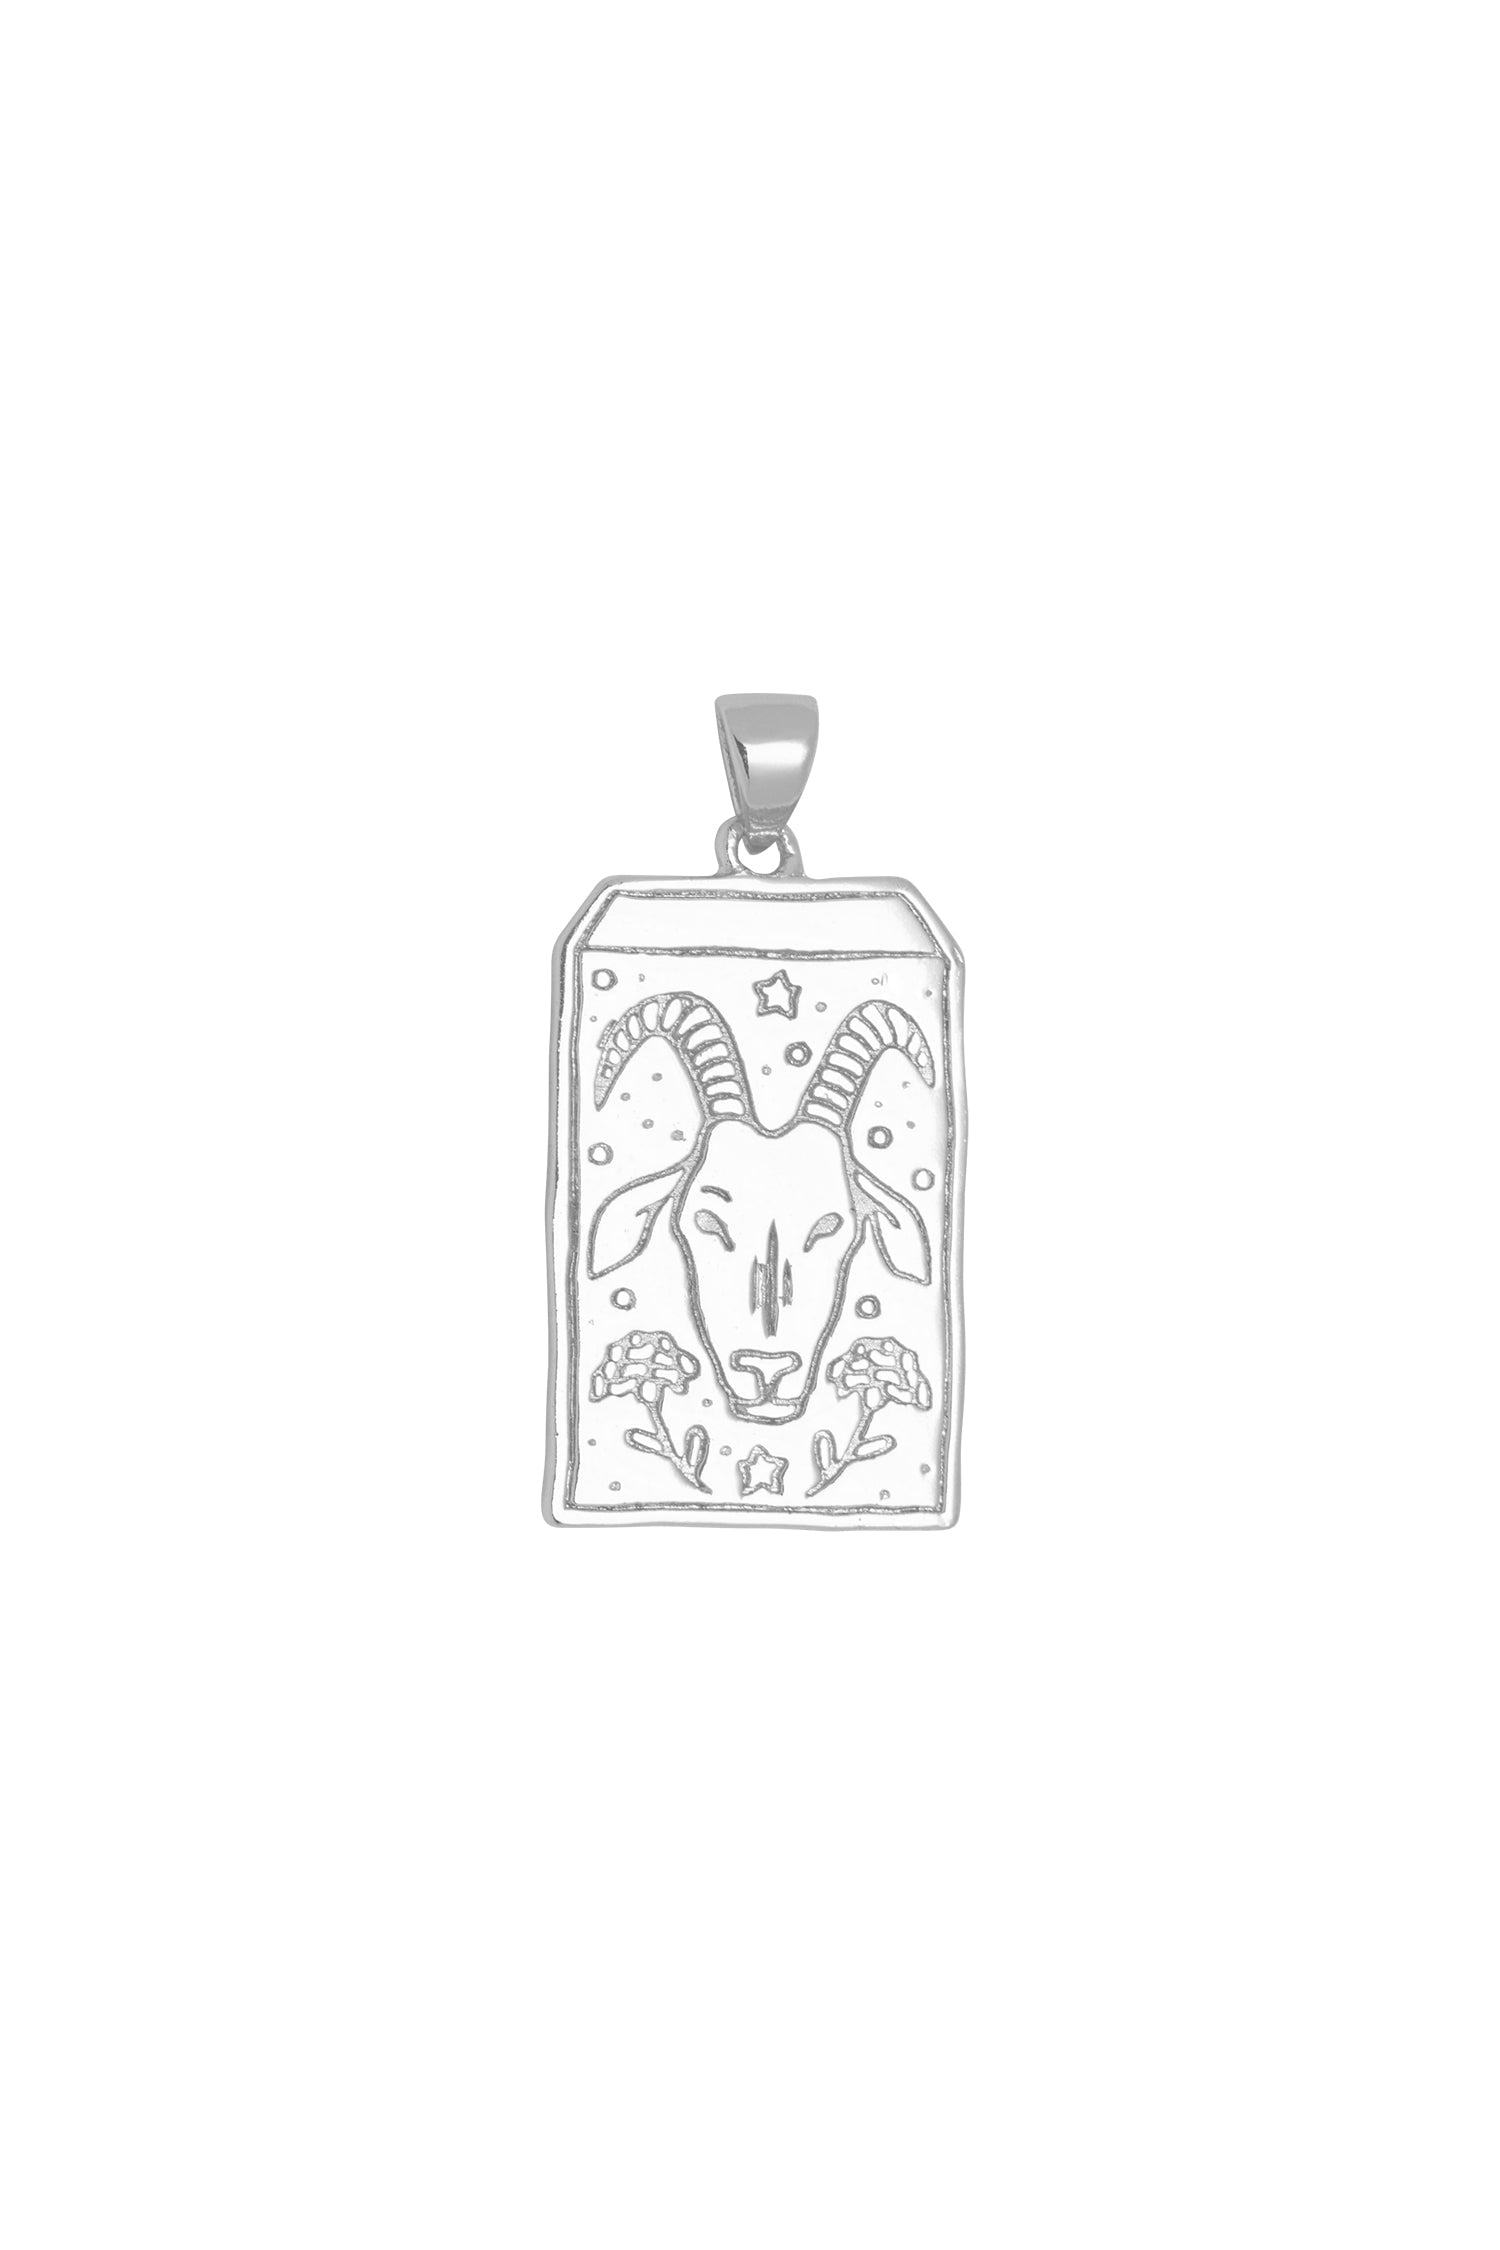 Goat Chinese Zodiac Pendant